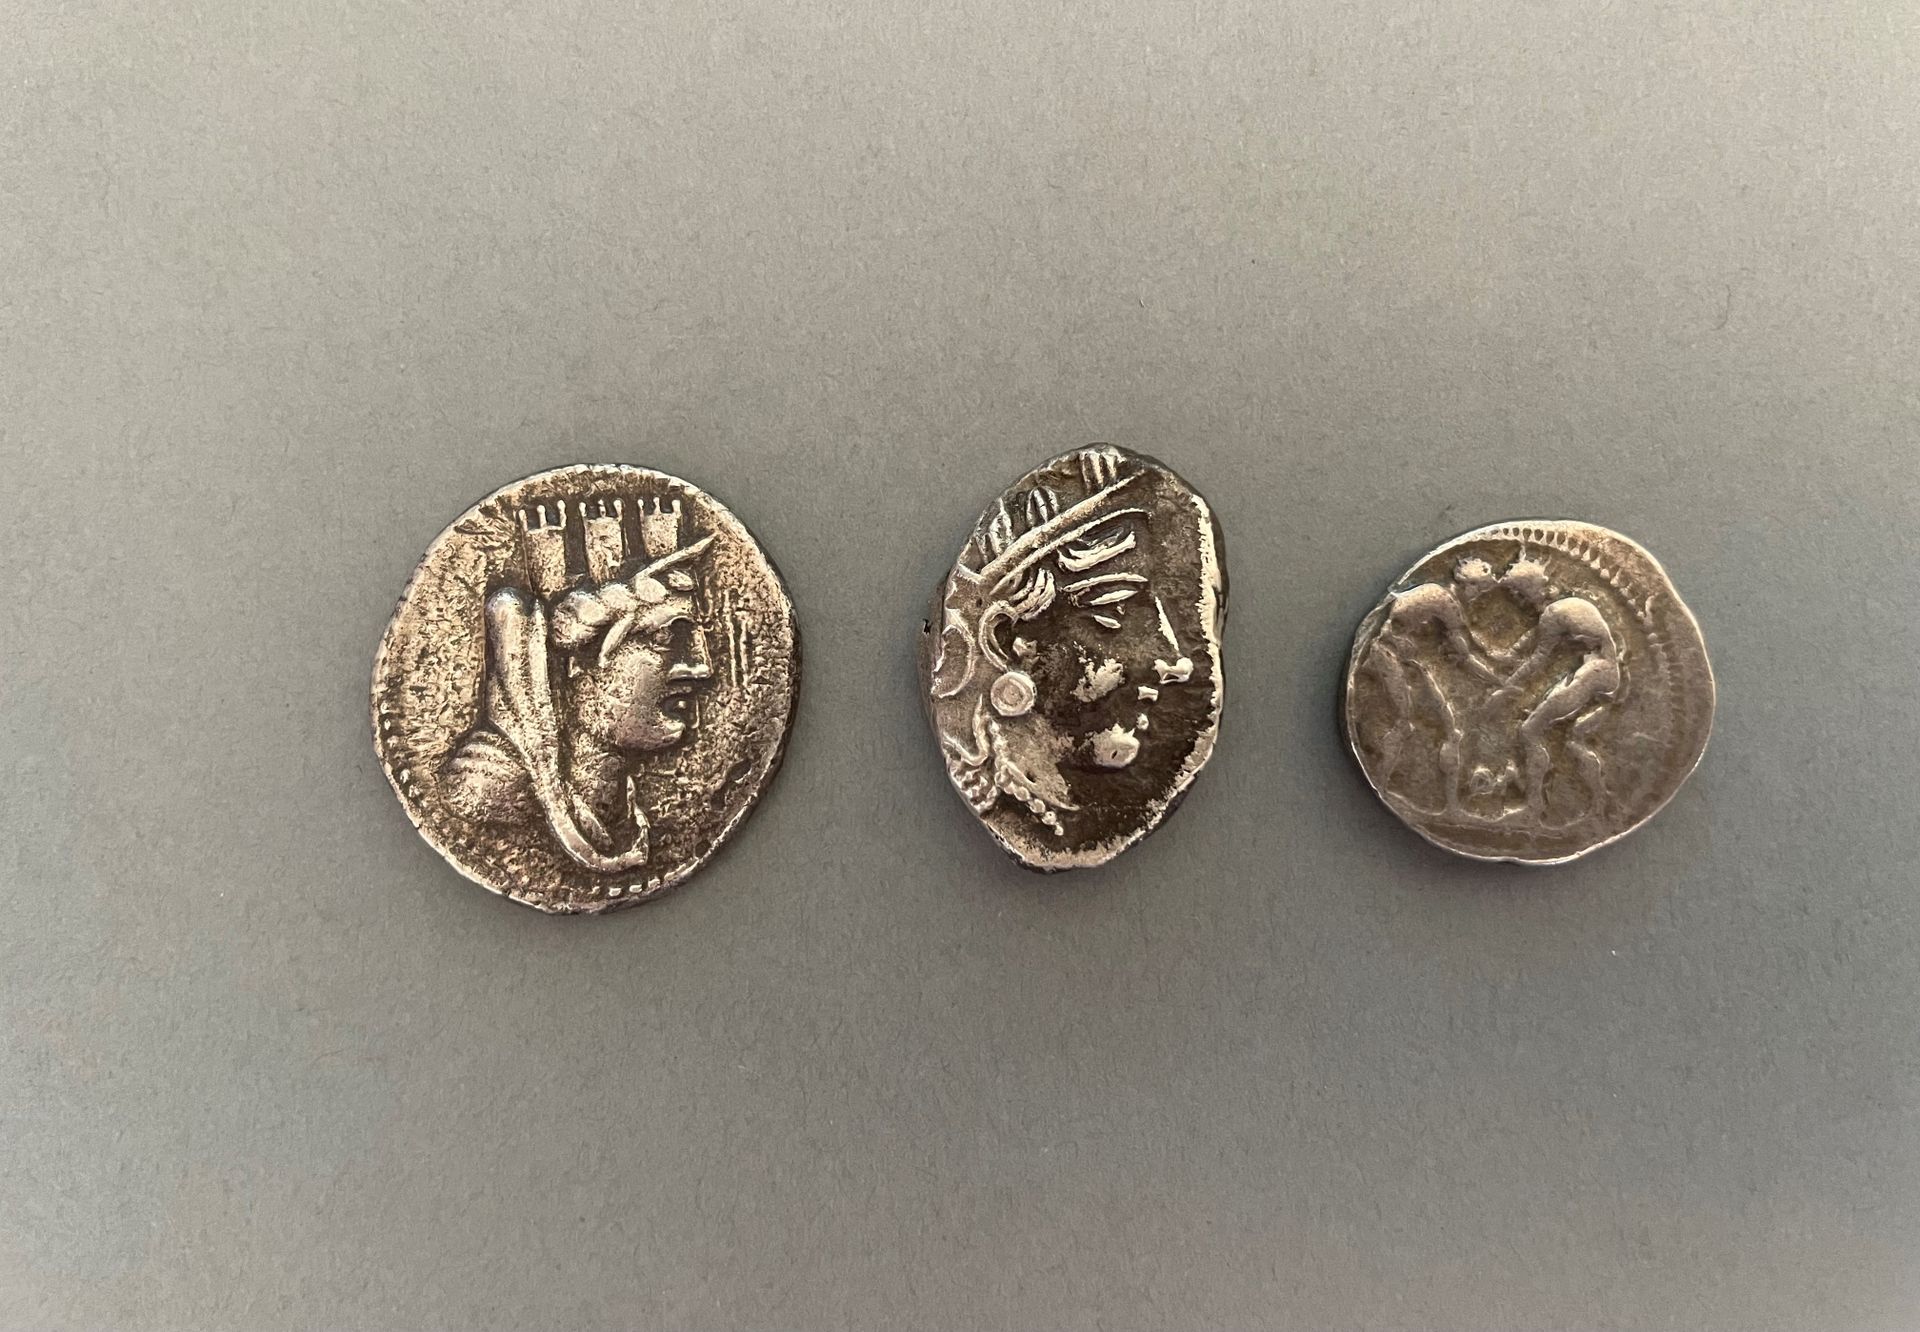 Null Griechenland.
Set mit 3 griechischen Münzen: Tetradrachme von Athen, Tetrad&hellip;